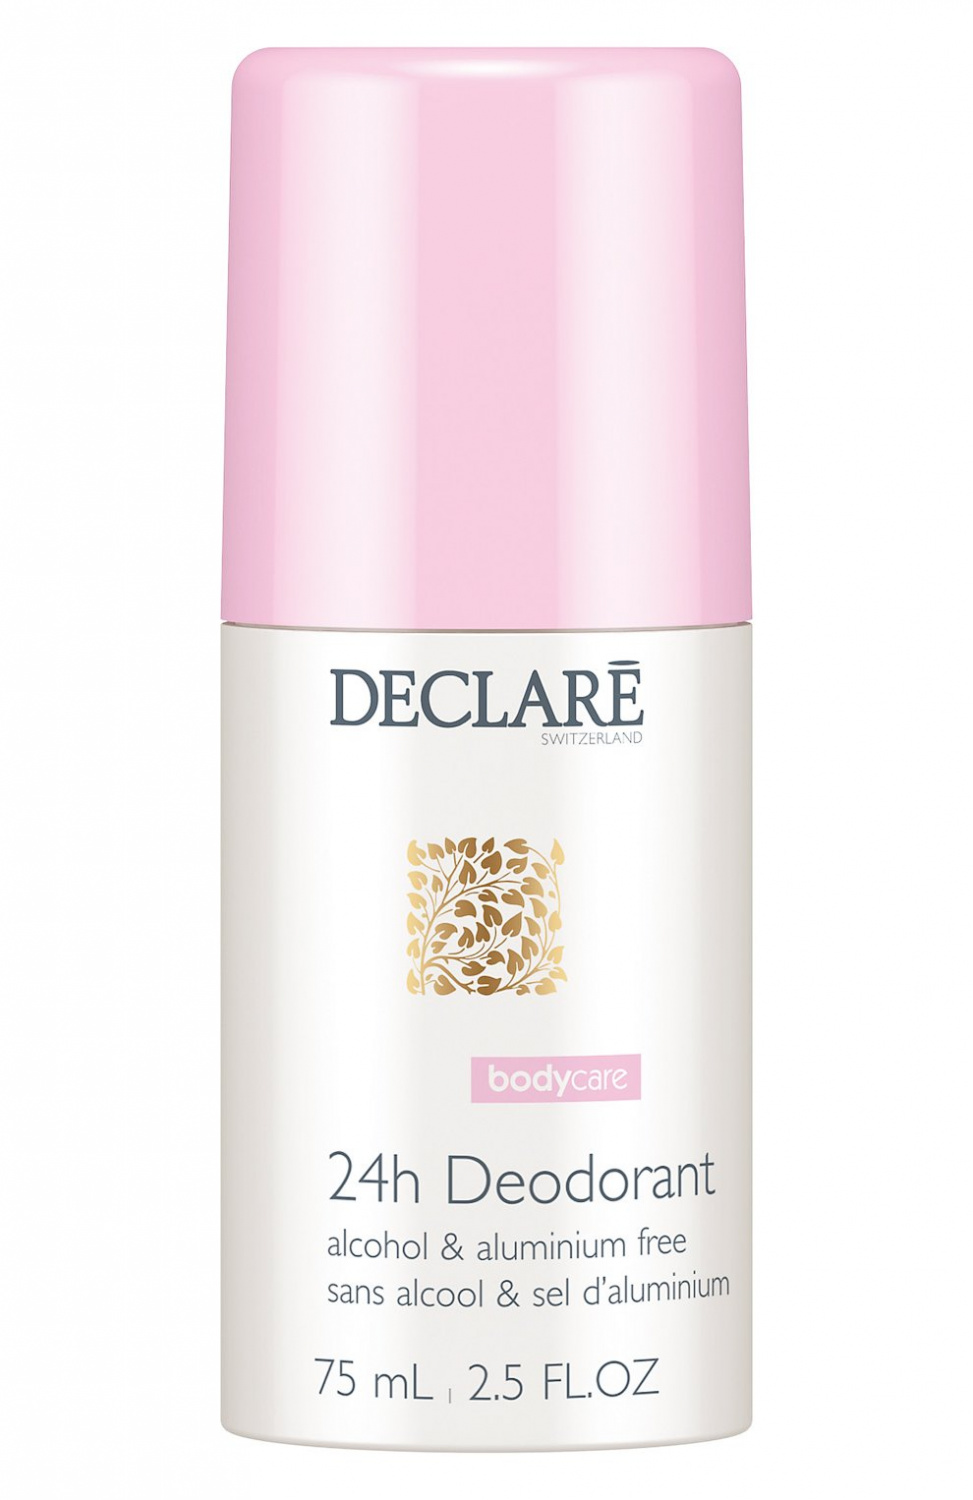 Declare 24h Deodorant 75ml - интернет-магазин профессиональной косметики Spadream, изображение 32936